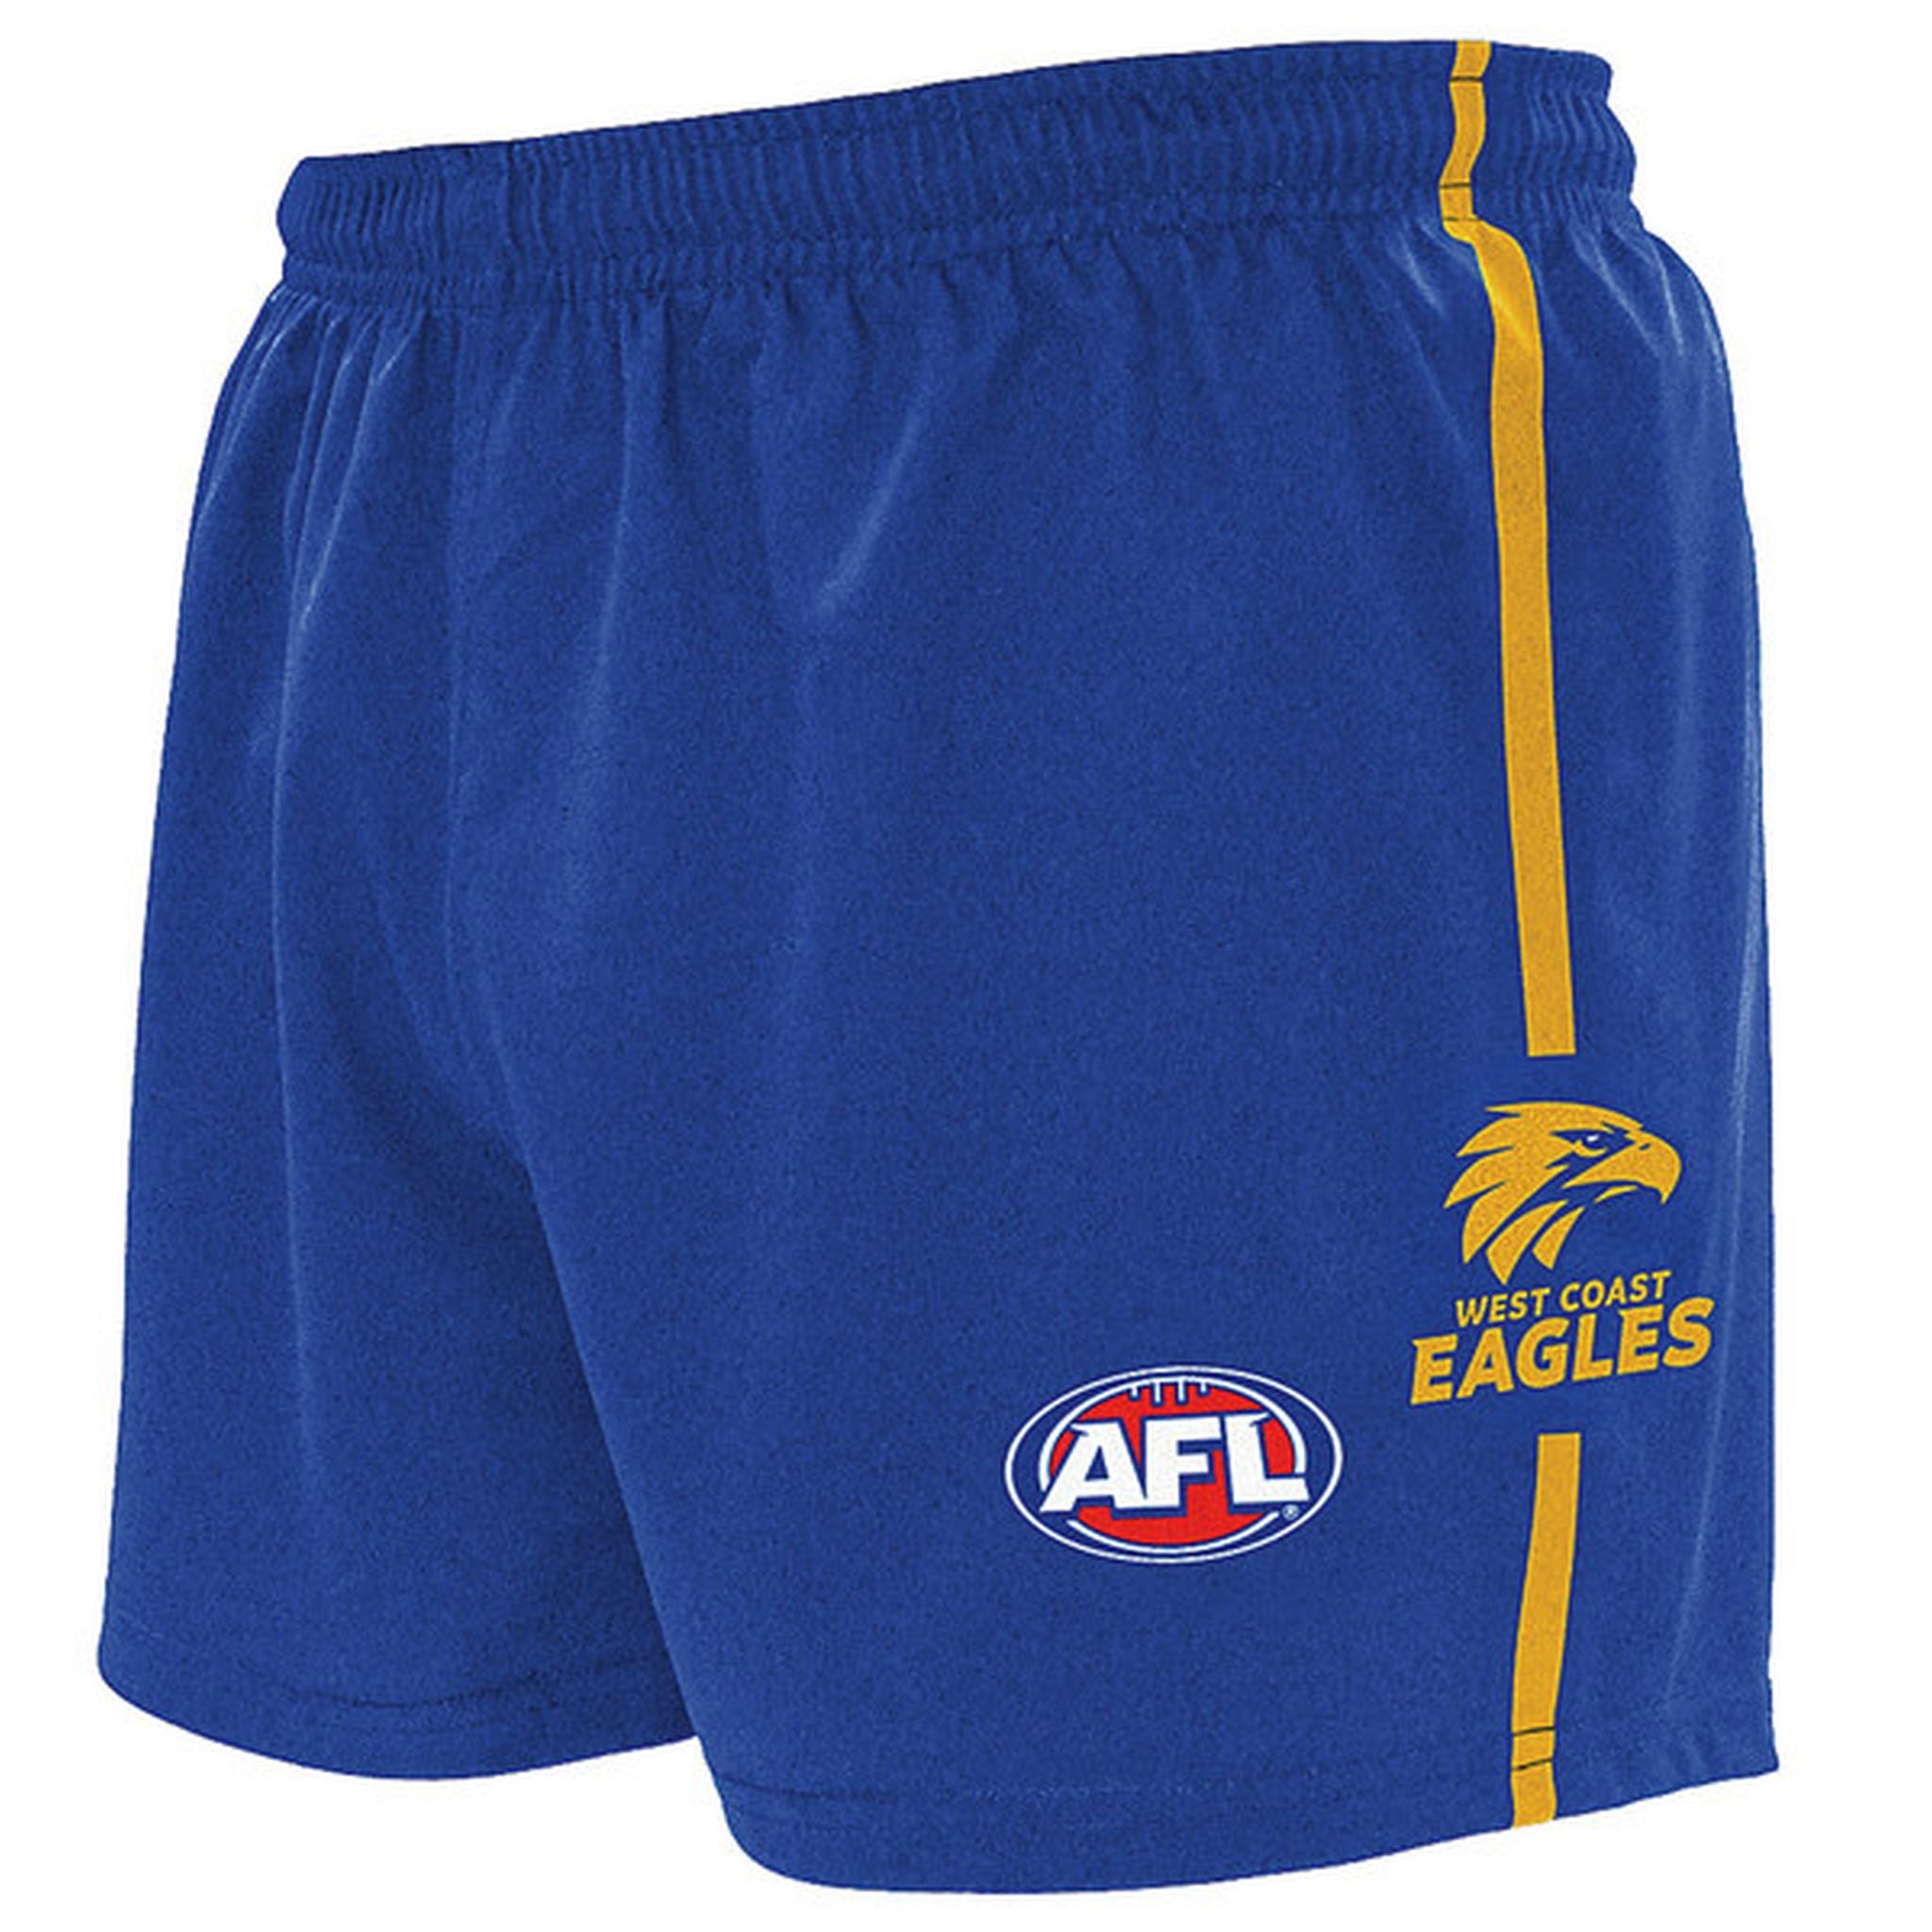 Burley West Coast Eagles AFL Replica Adults Shorts